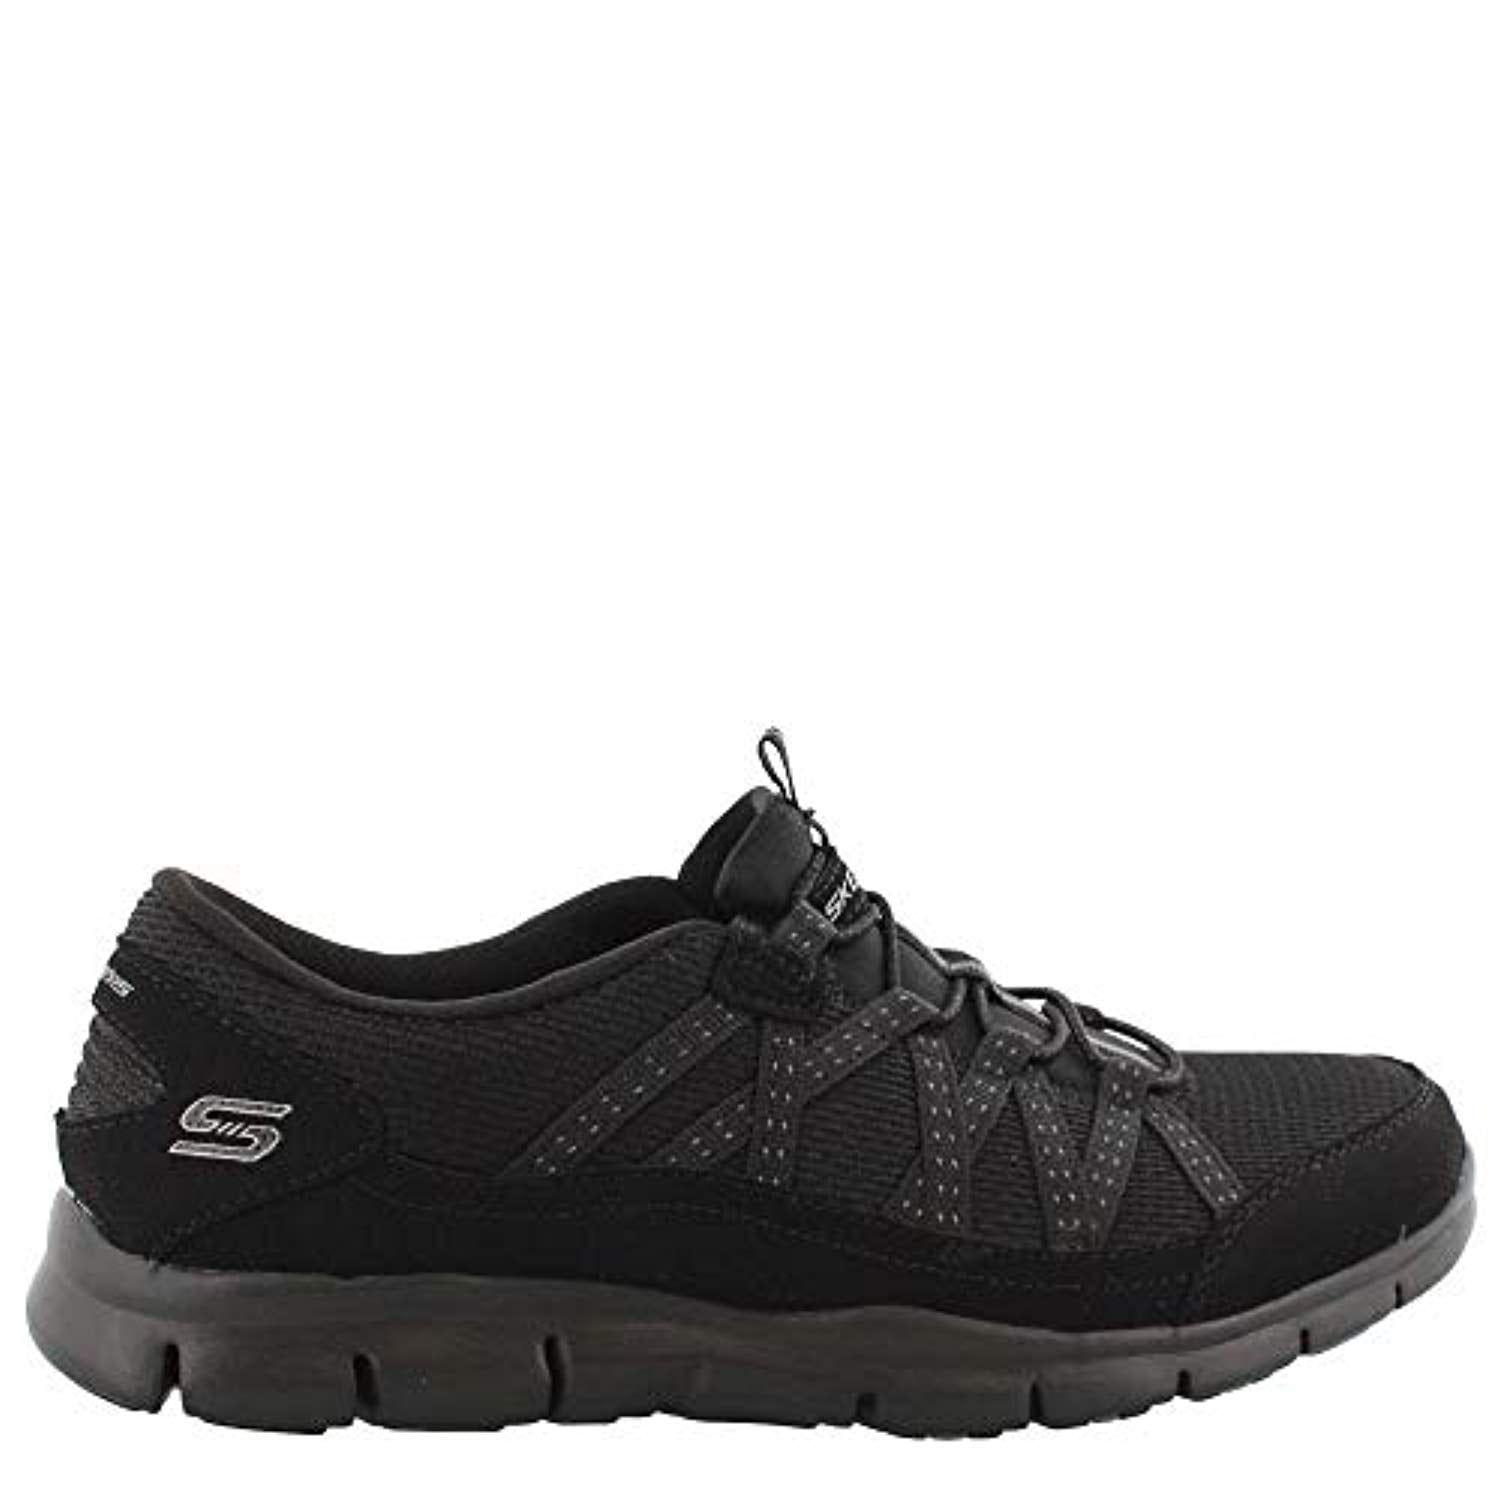 Skechers - Skechers Women's, Gratis - Strolling Sneaker Black 11 W ...